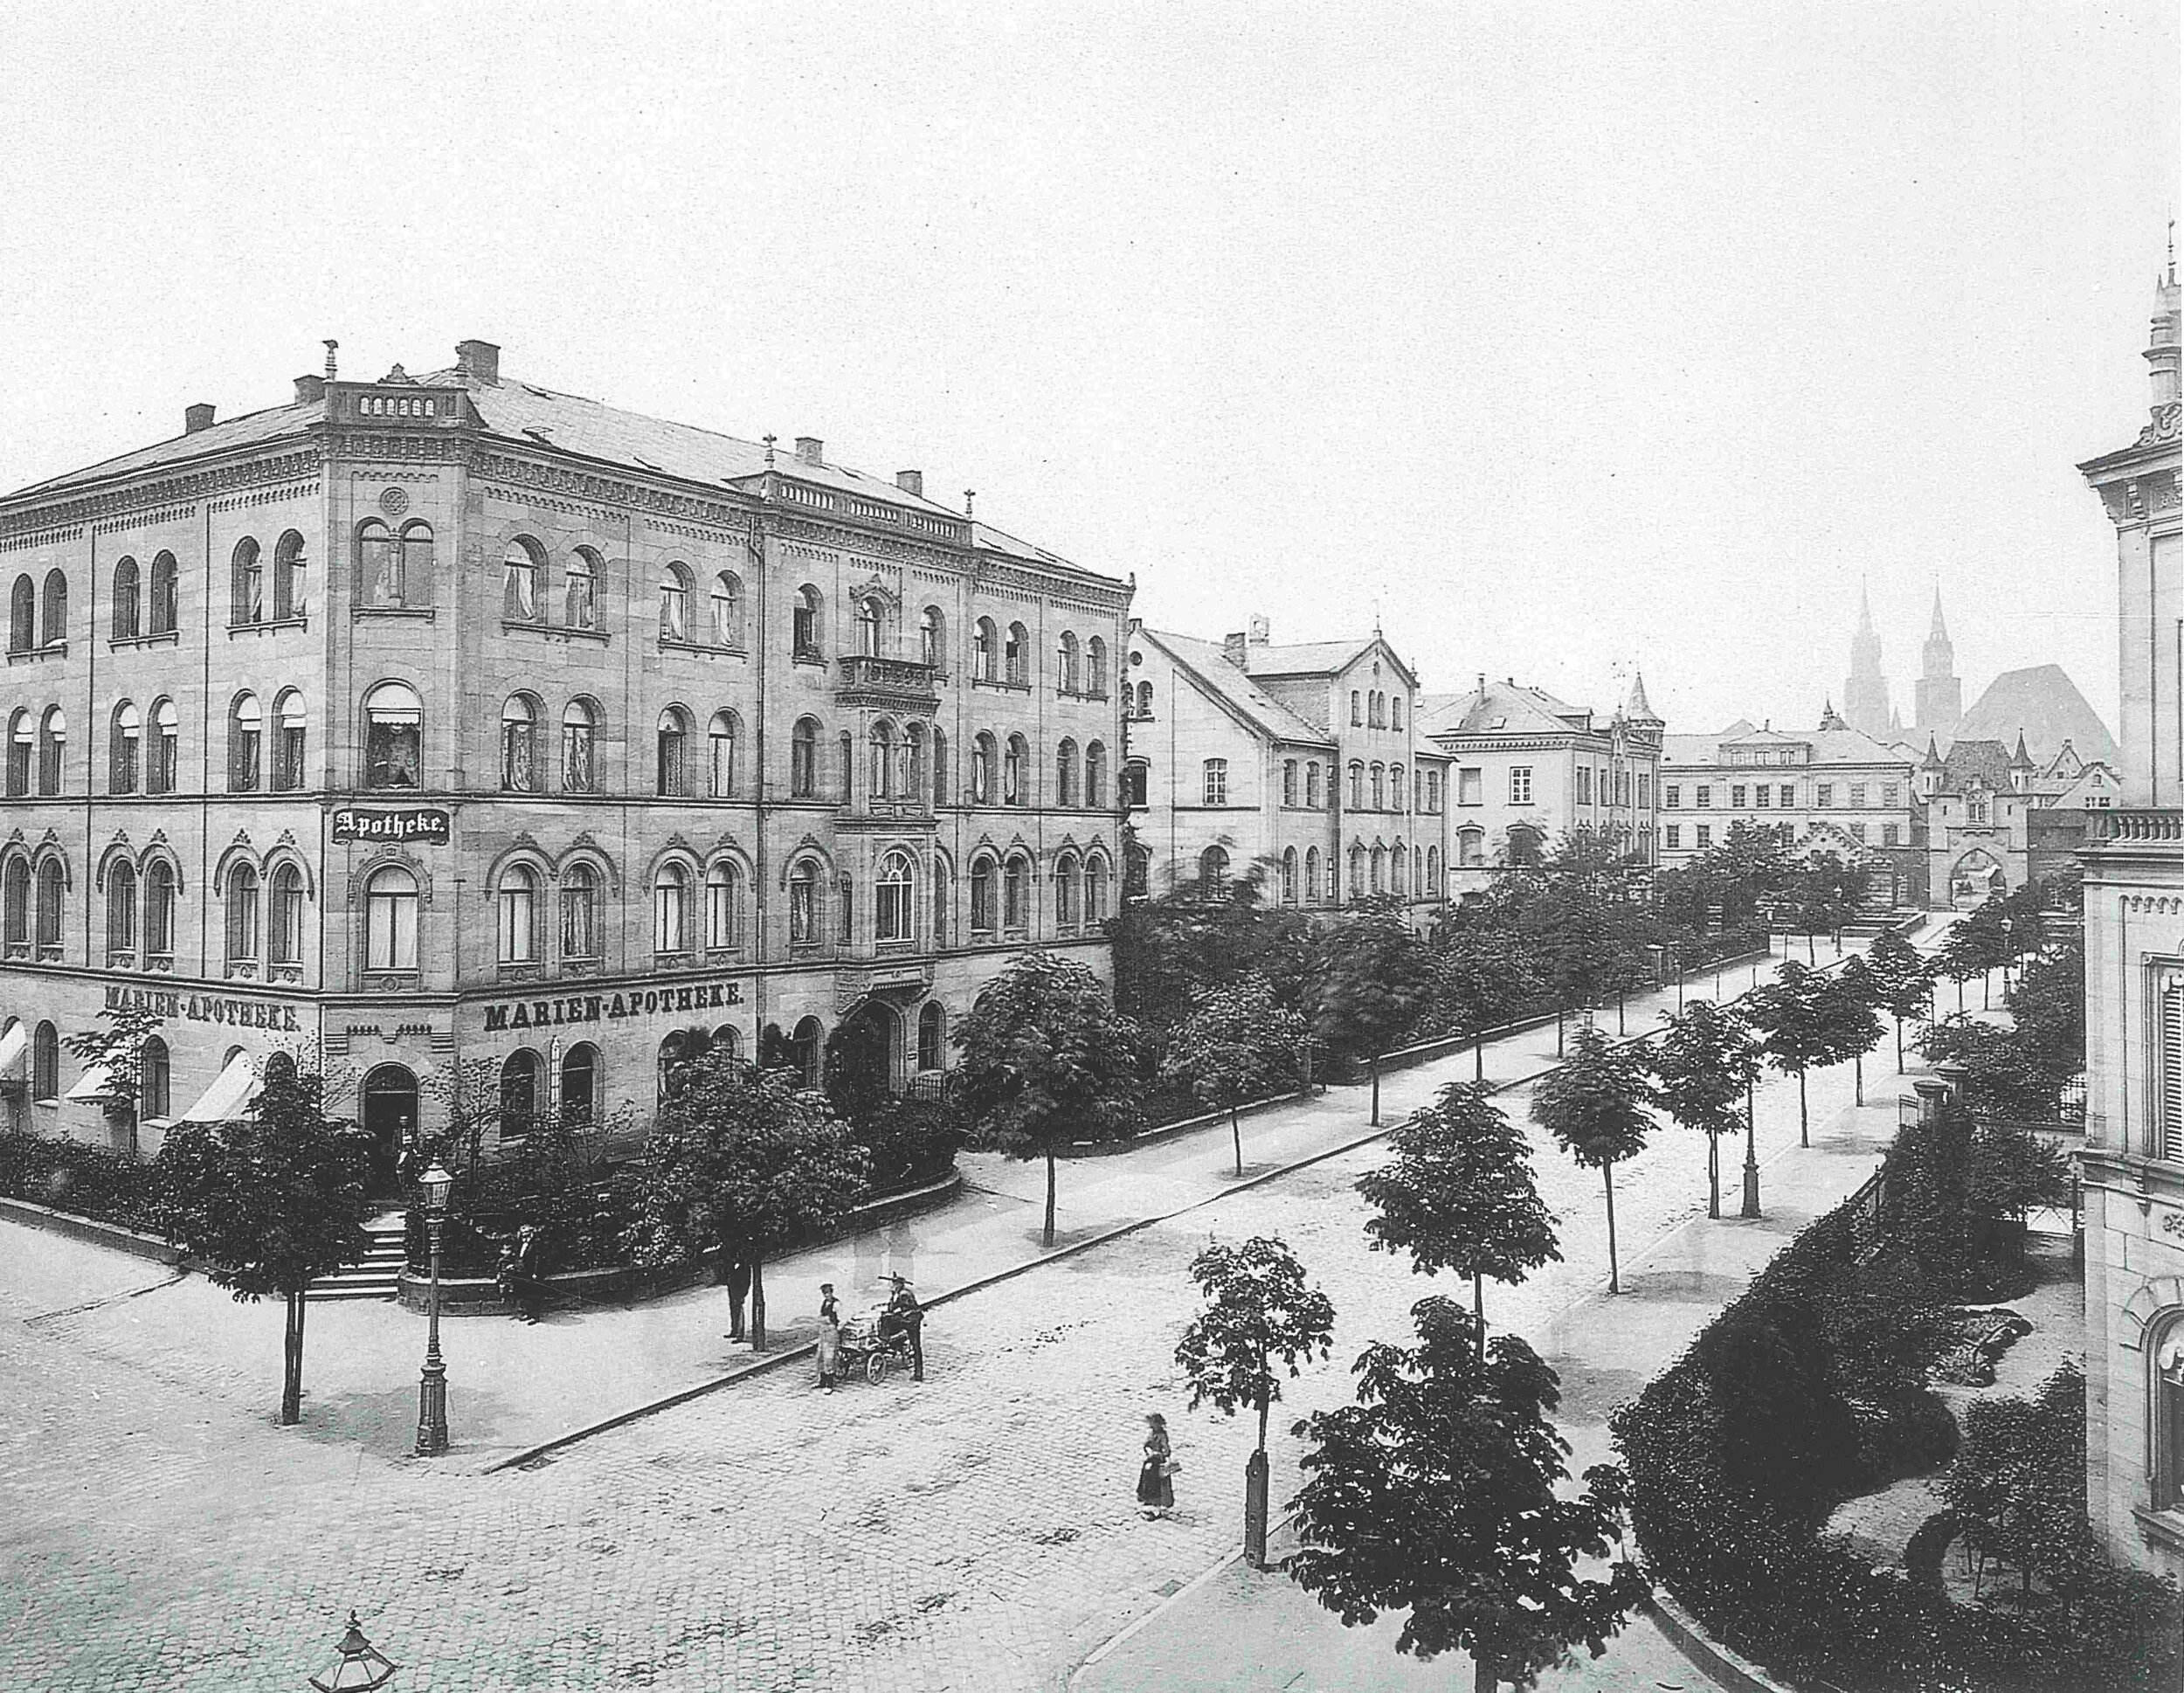 Blick in die Marienstraße in Richtung Marientor, Fotografie von Ferdinand Schmidt um 1870.